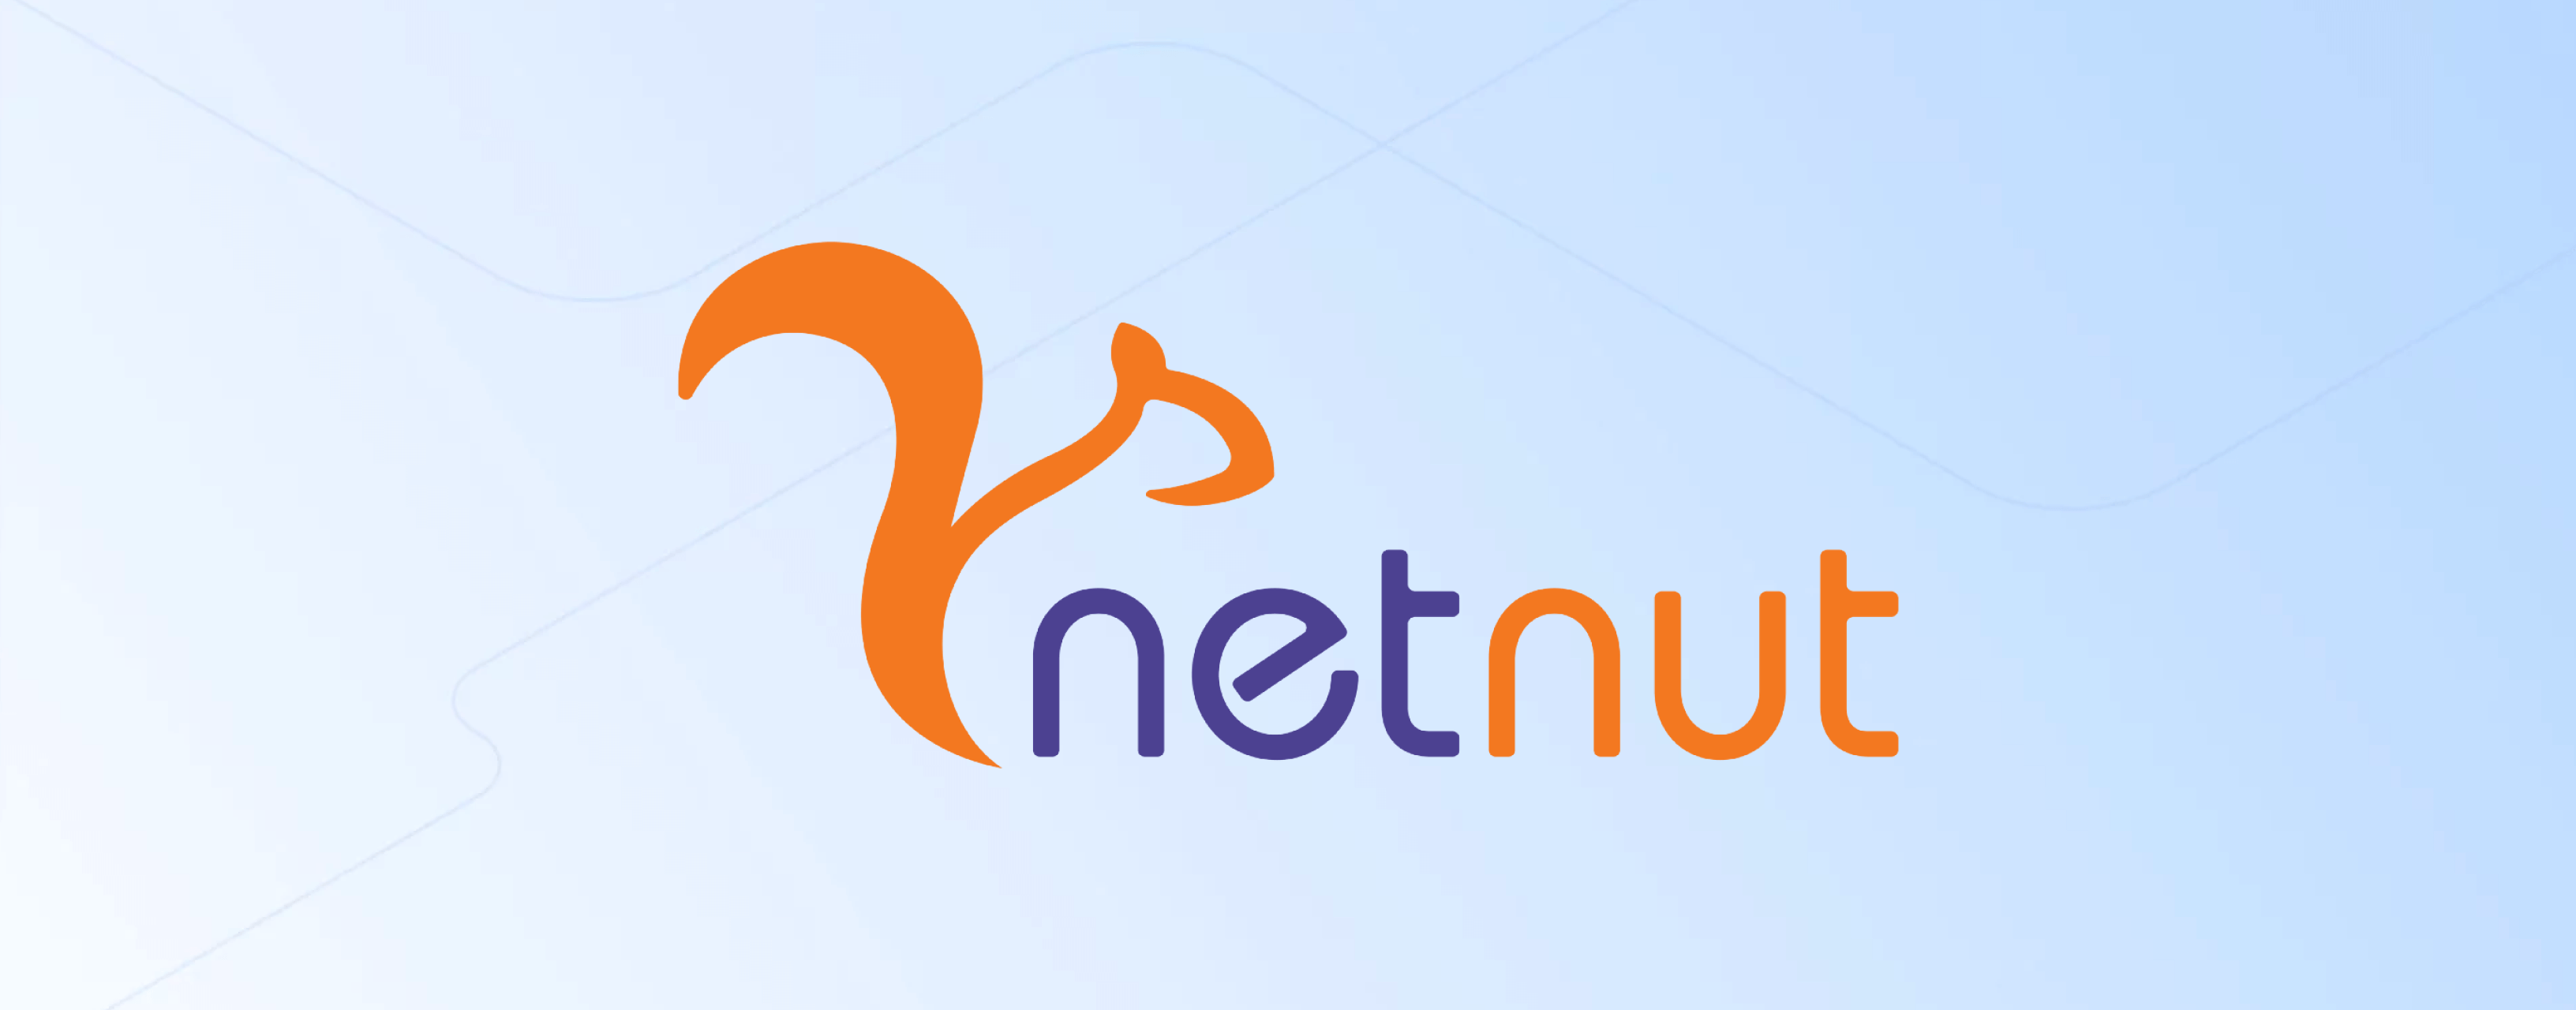 netnut_desktop_2x